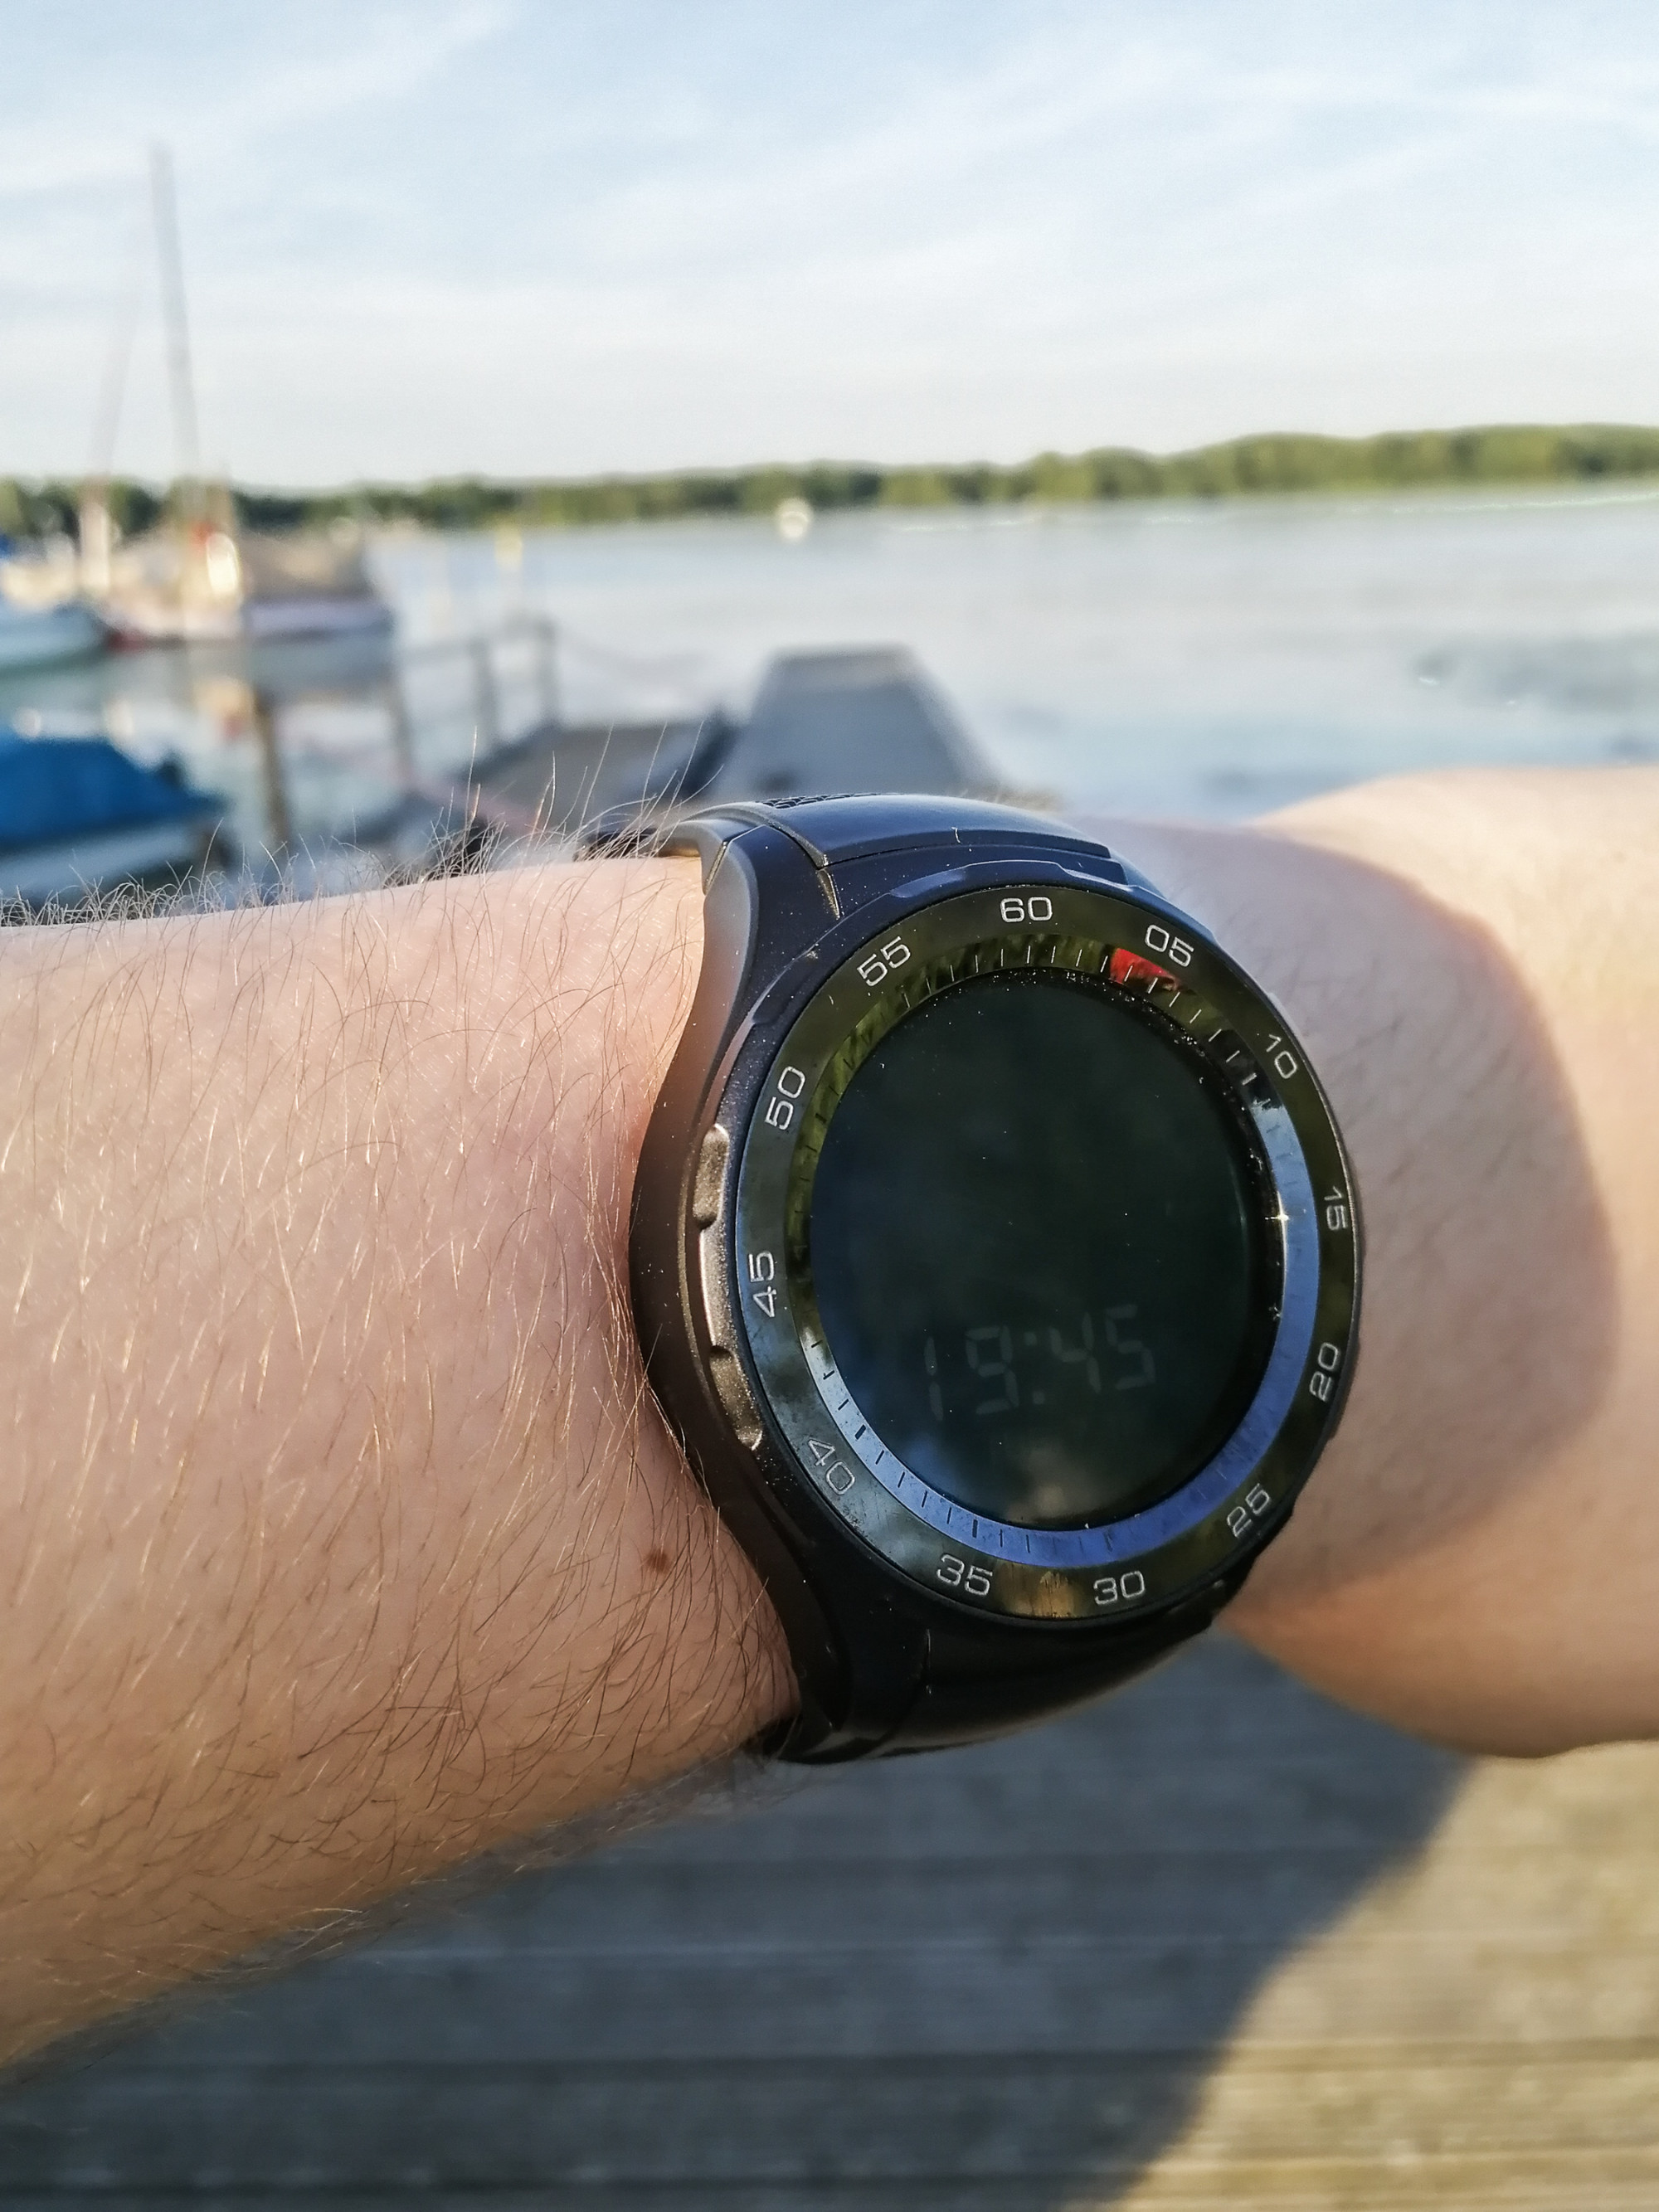 Bild von der Huawei Watch 2 am Arm getragen